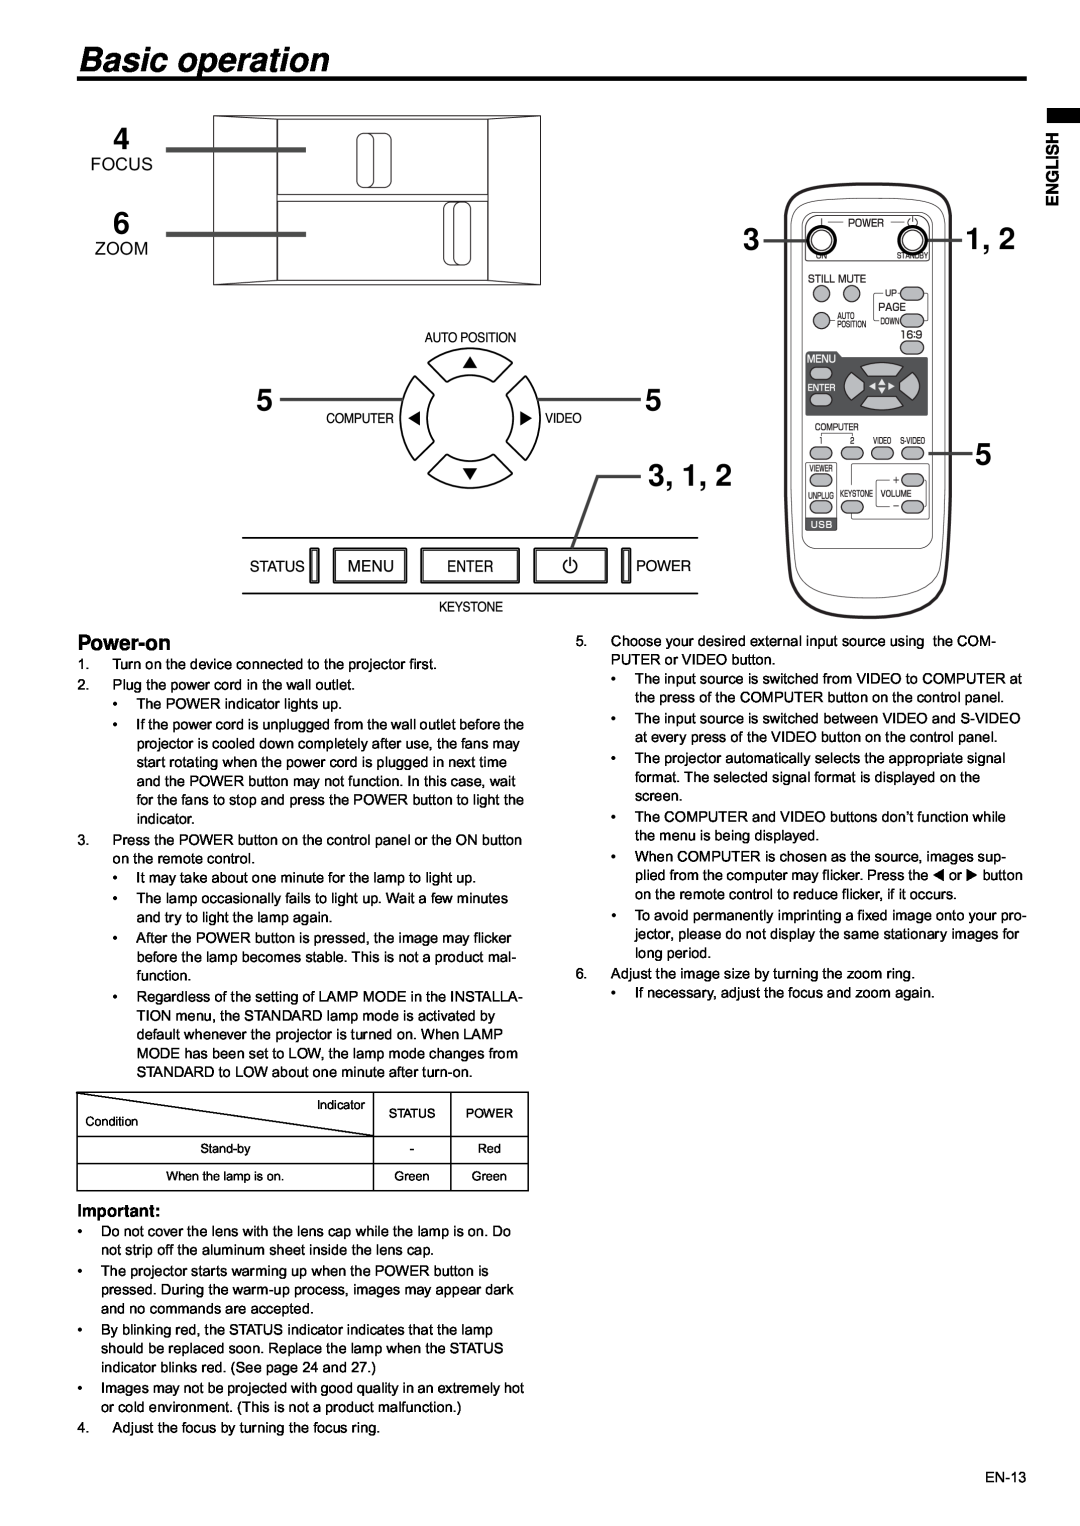 Mitsubishi Electronics XD435U-G user manual Basic operation, Power-on, 3, 1, Focus, Zoom 